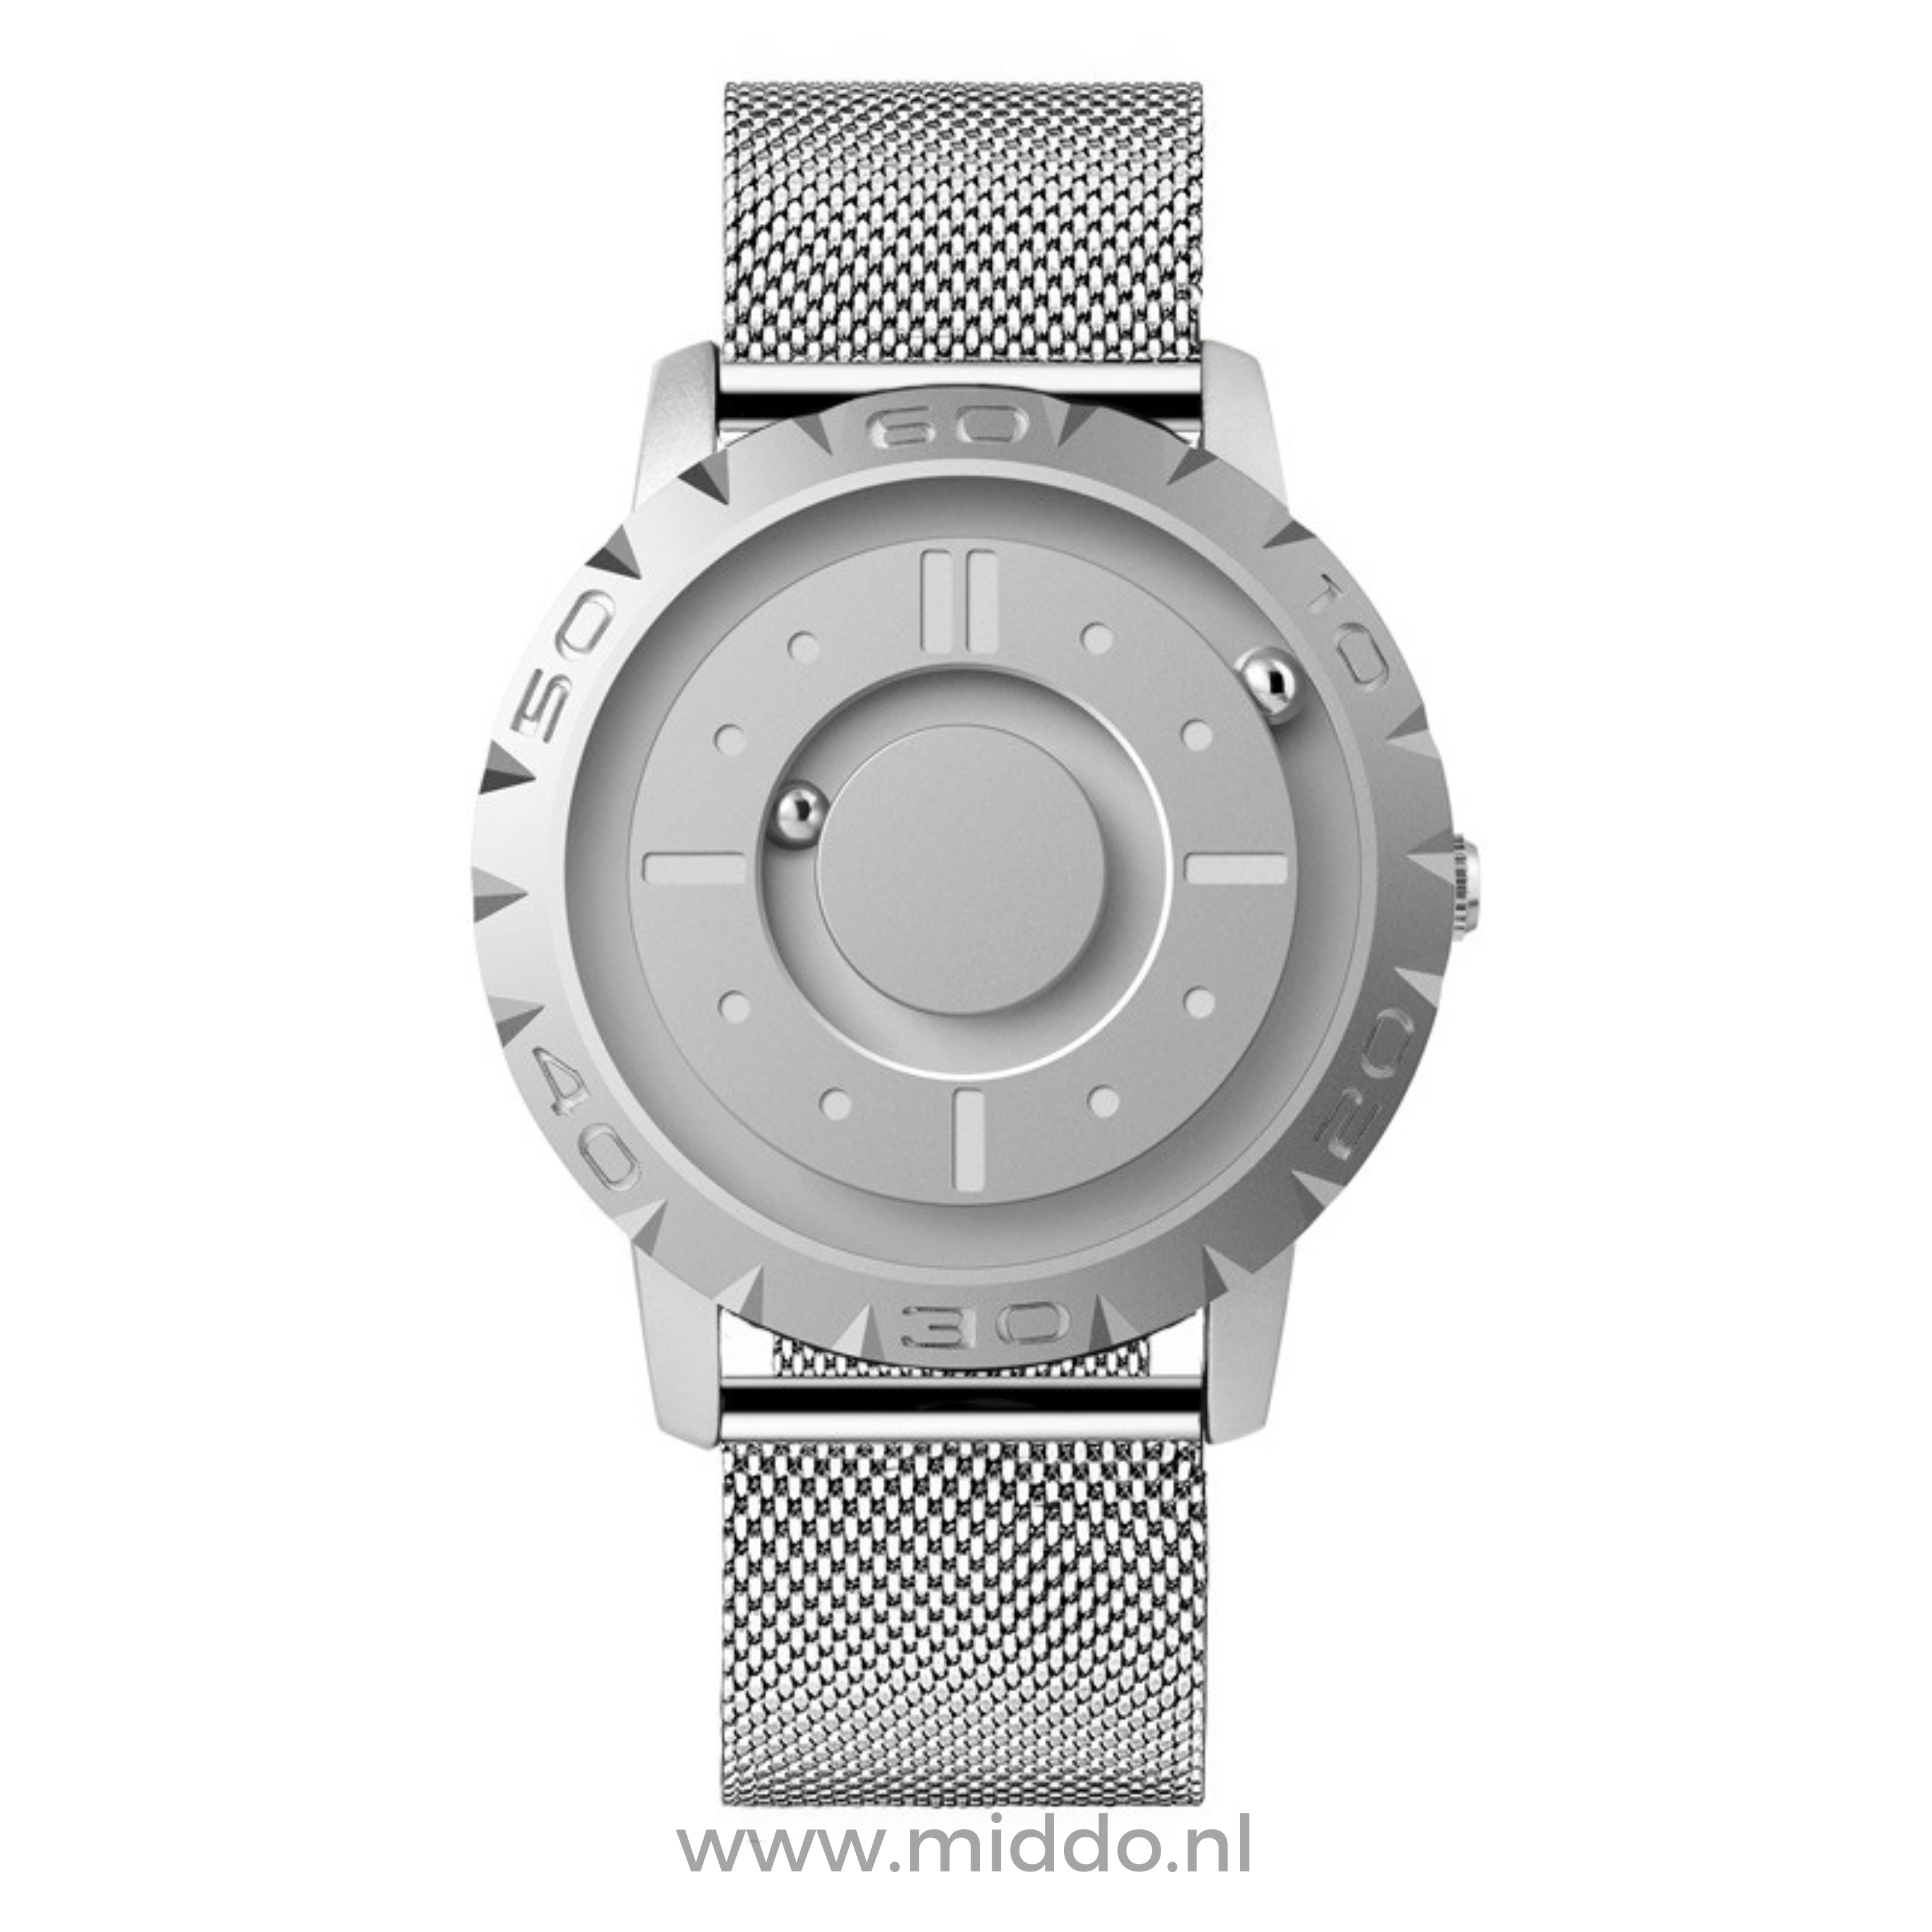 Zilver horloge met zilveren meshband op witte achtergrond.